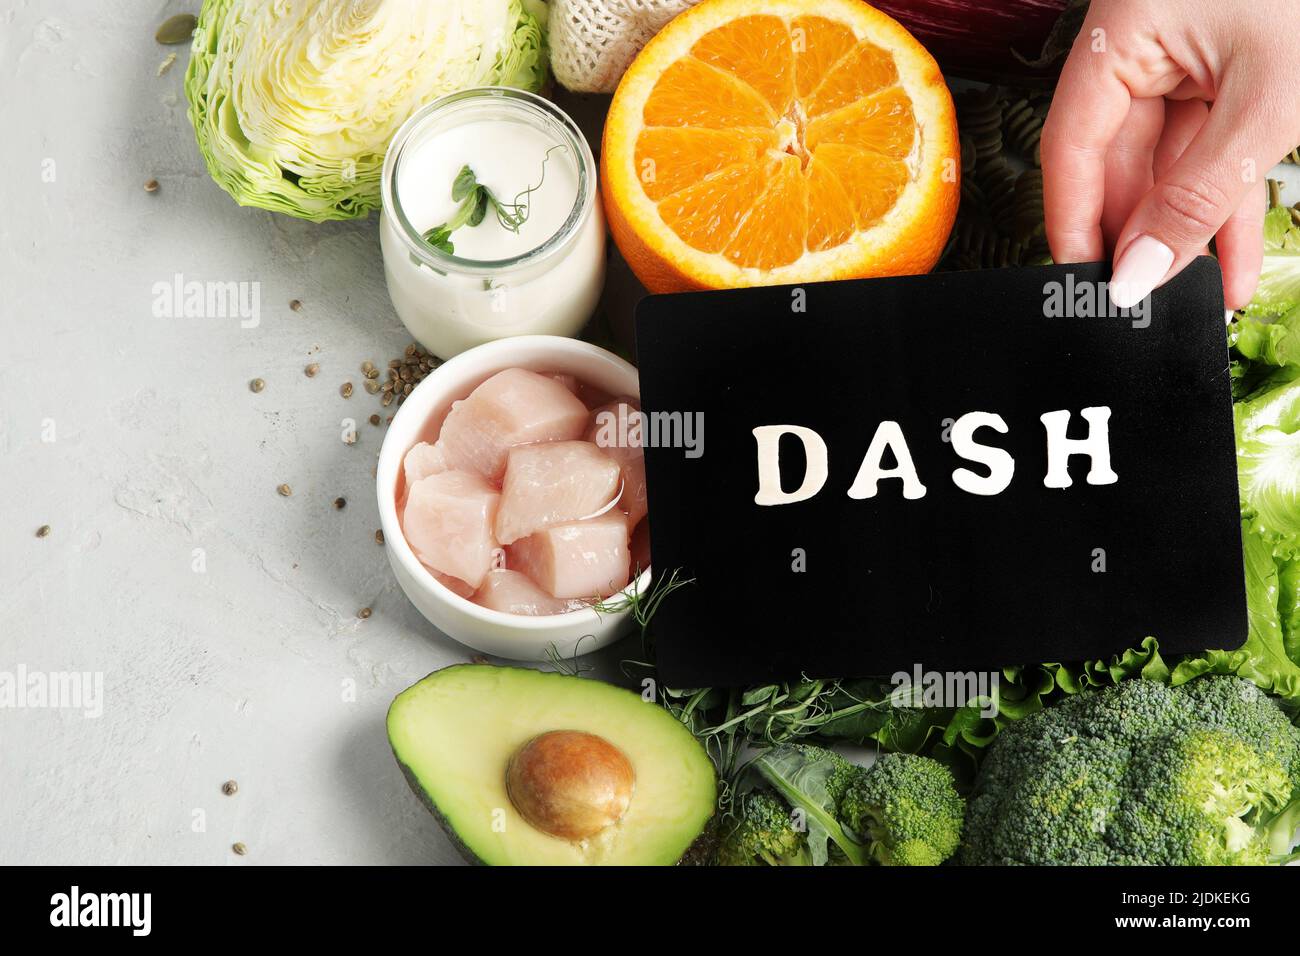 Dash dieta mediterranea flexitarian su sfondo chiaro. Concetto di cibo sano. Disposizione piatta, vista dall'alto, spazio di copia Foto Stock